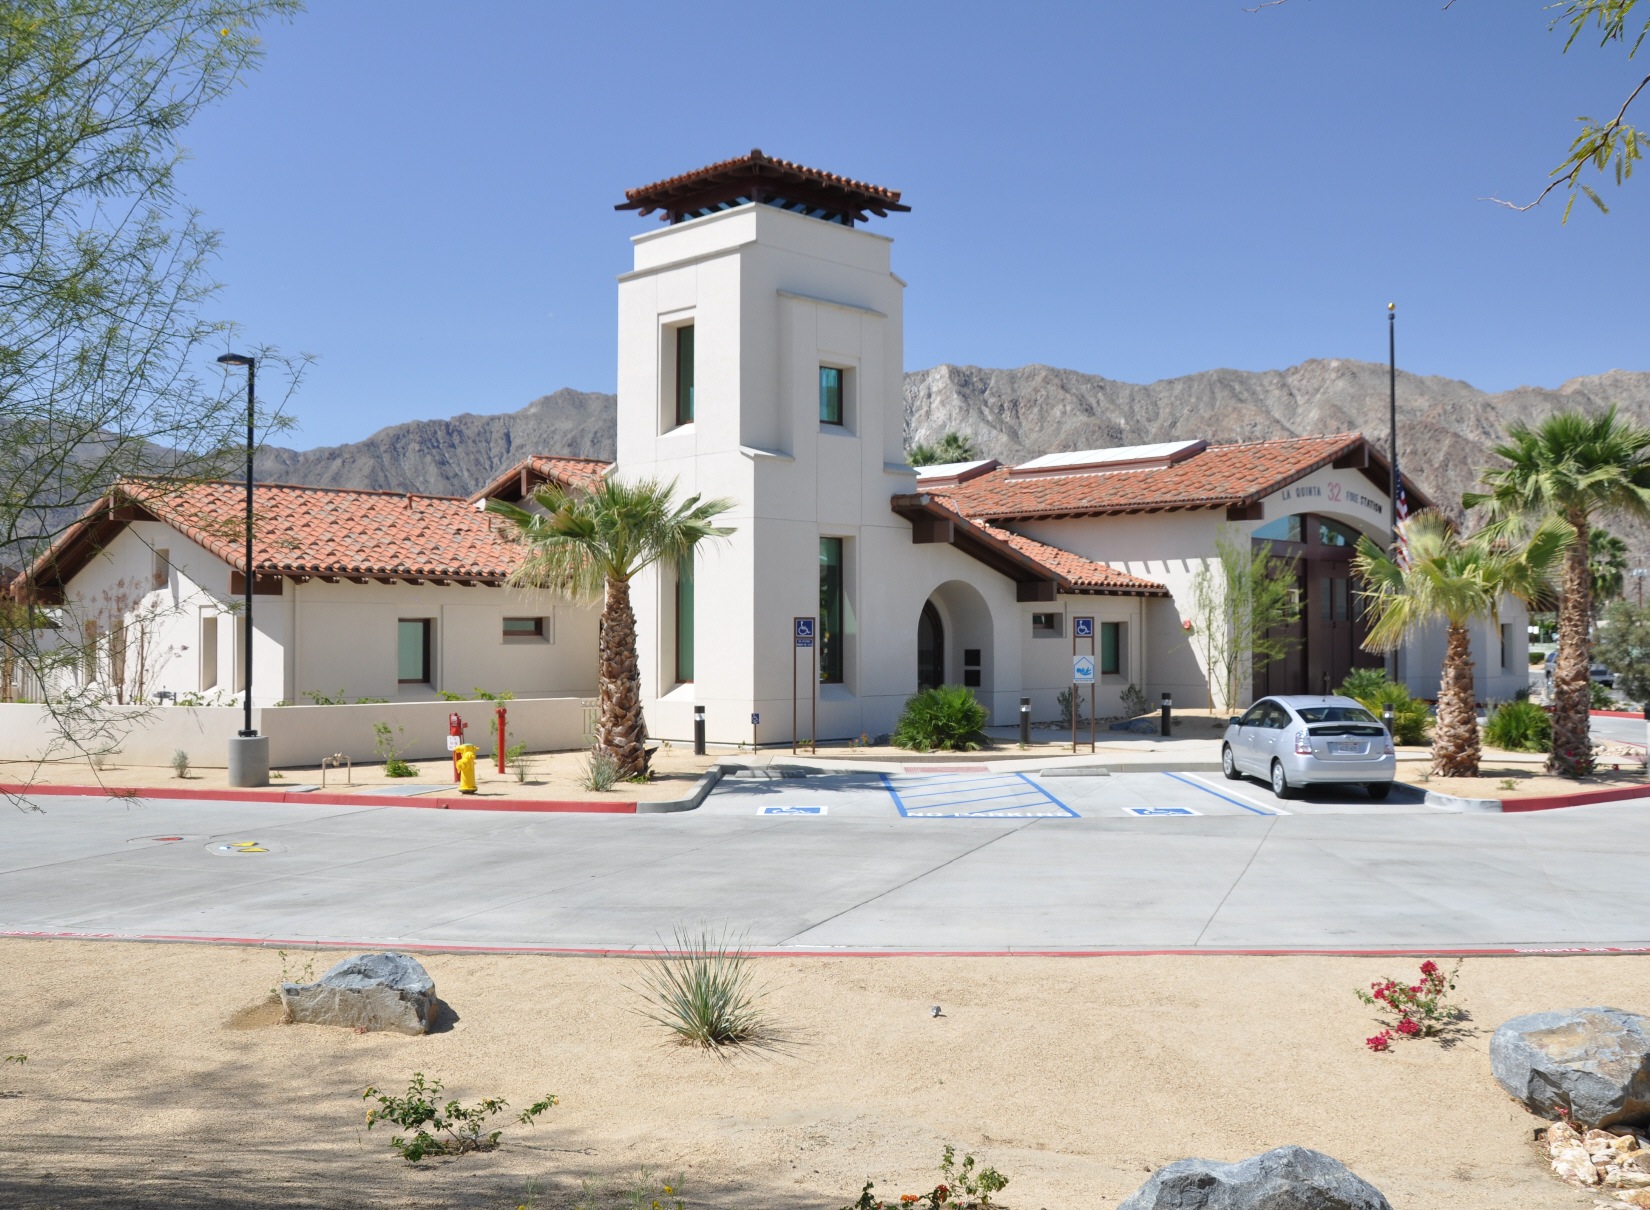 La Quinta Fire Station No. 52: Contemporary Architecture Integration